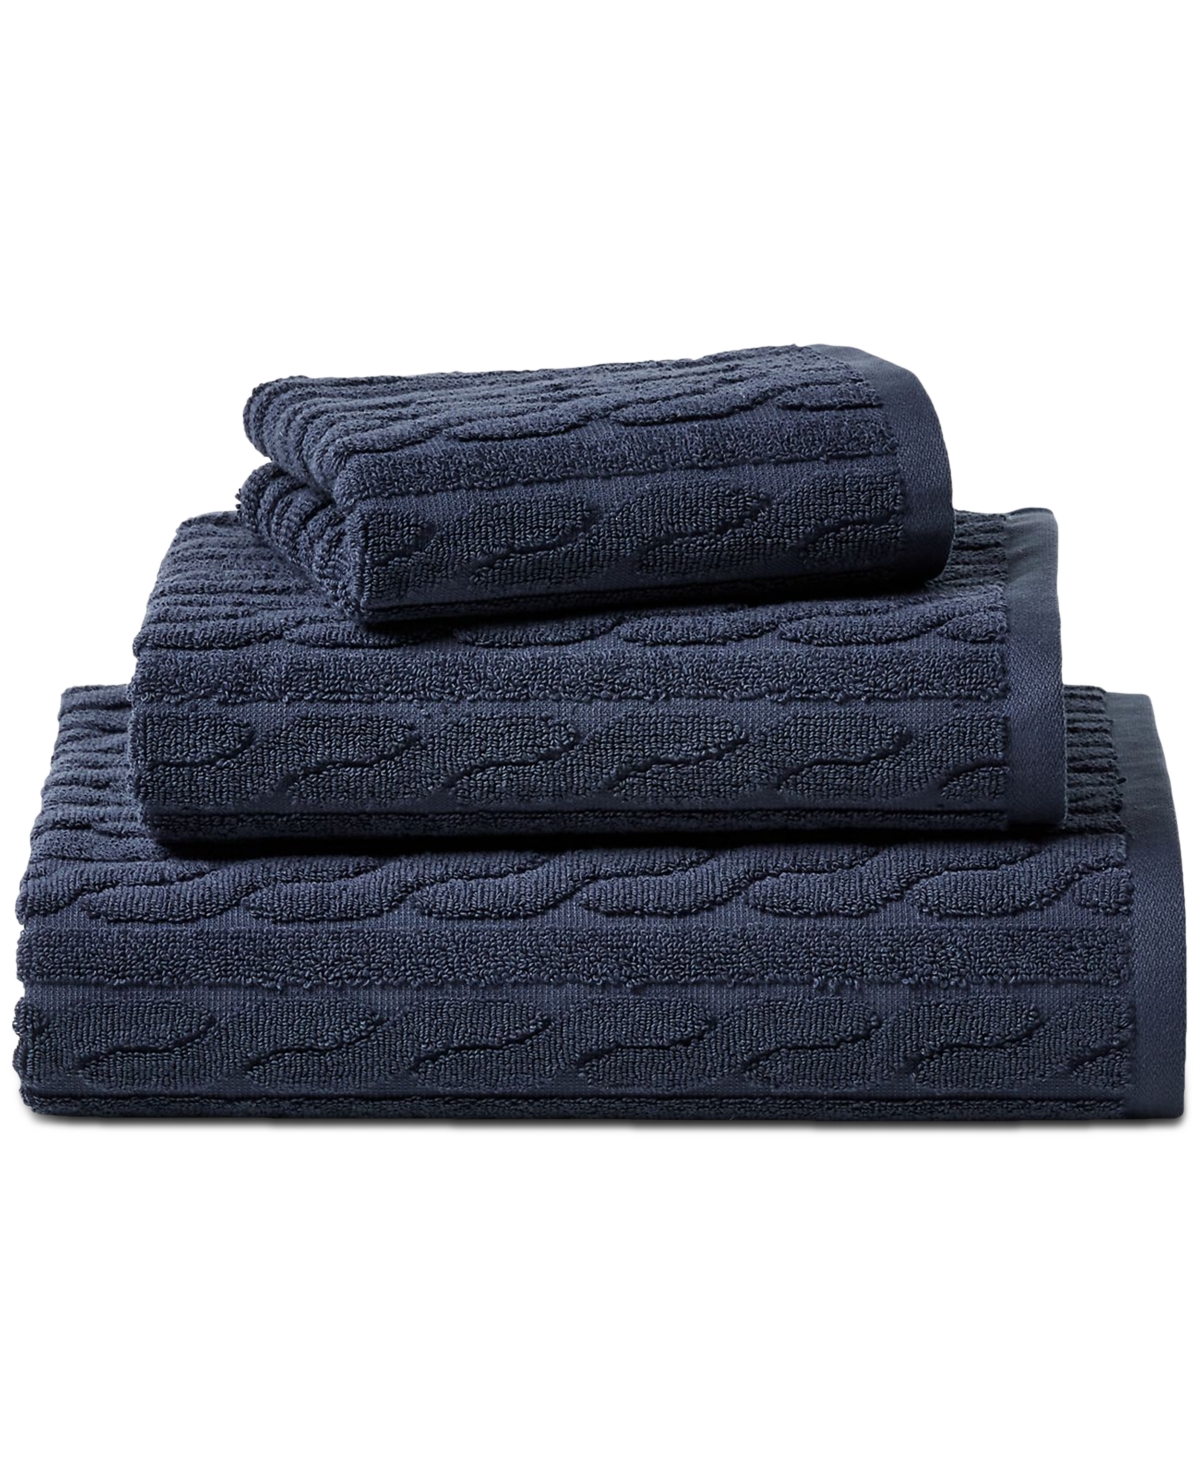 Lauren Ralph Lauren Sanders Cable Bath Towel Bedding In Club Navy